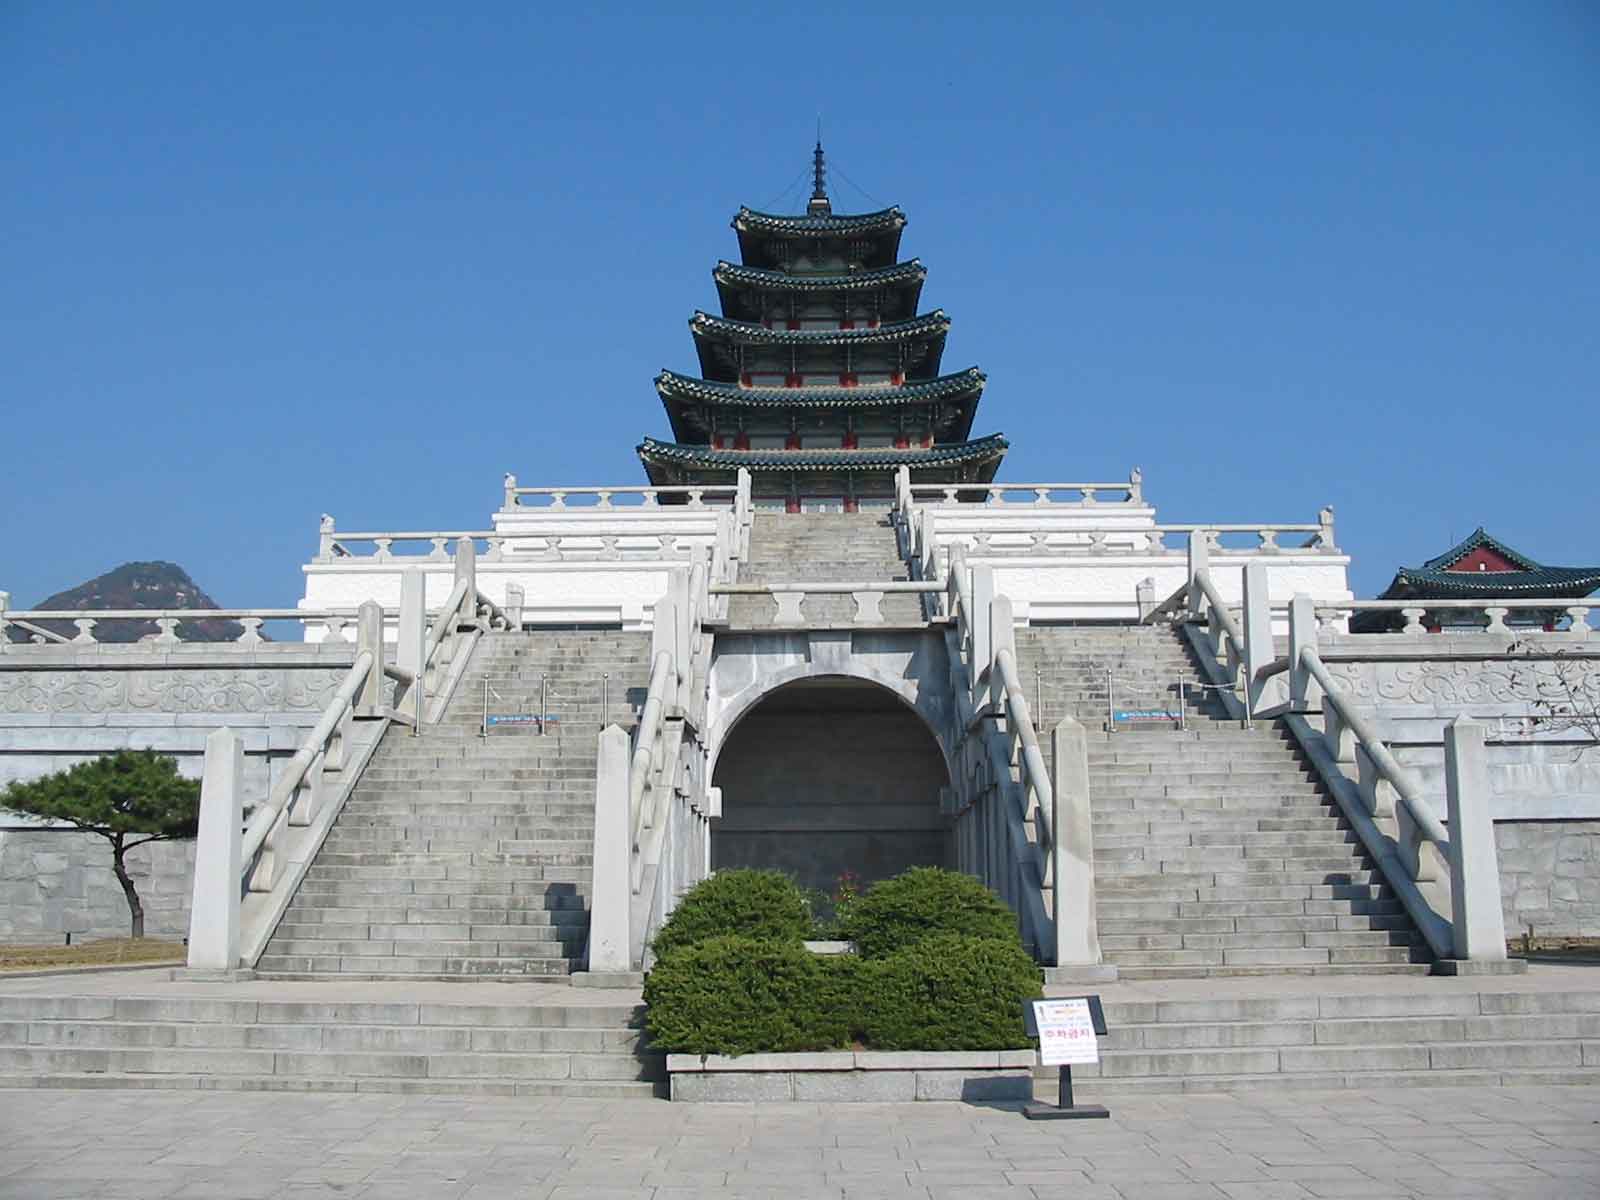 Hình ảnh bảo tàng nhìn từ phía trước - Bảo tàng Quốc gia Hàn Quốc